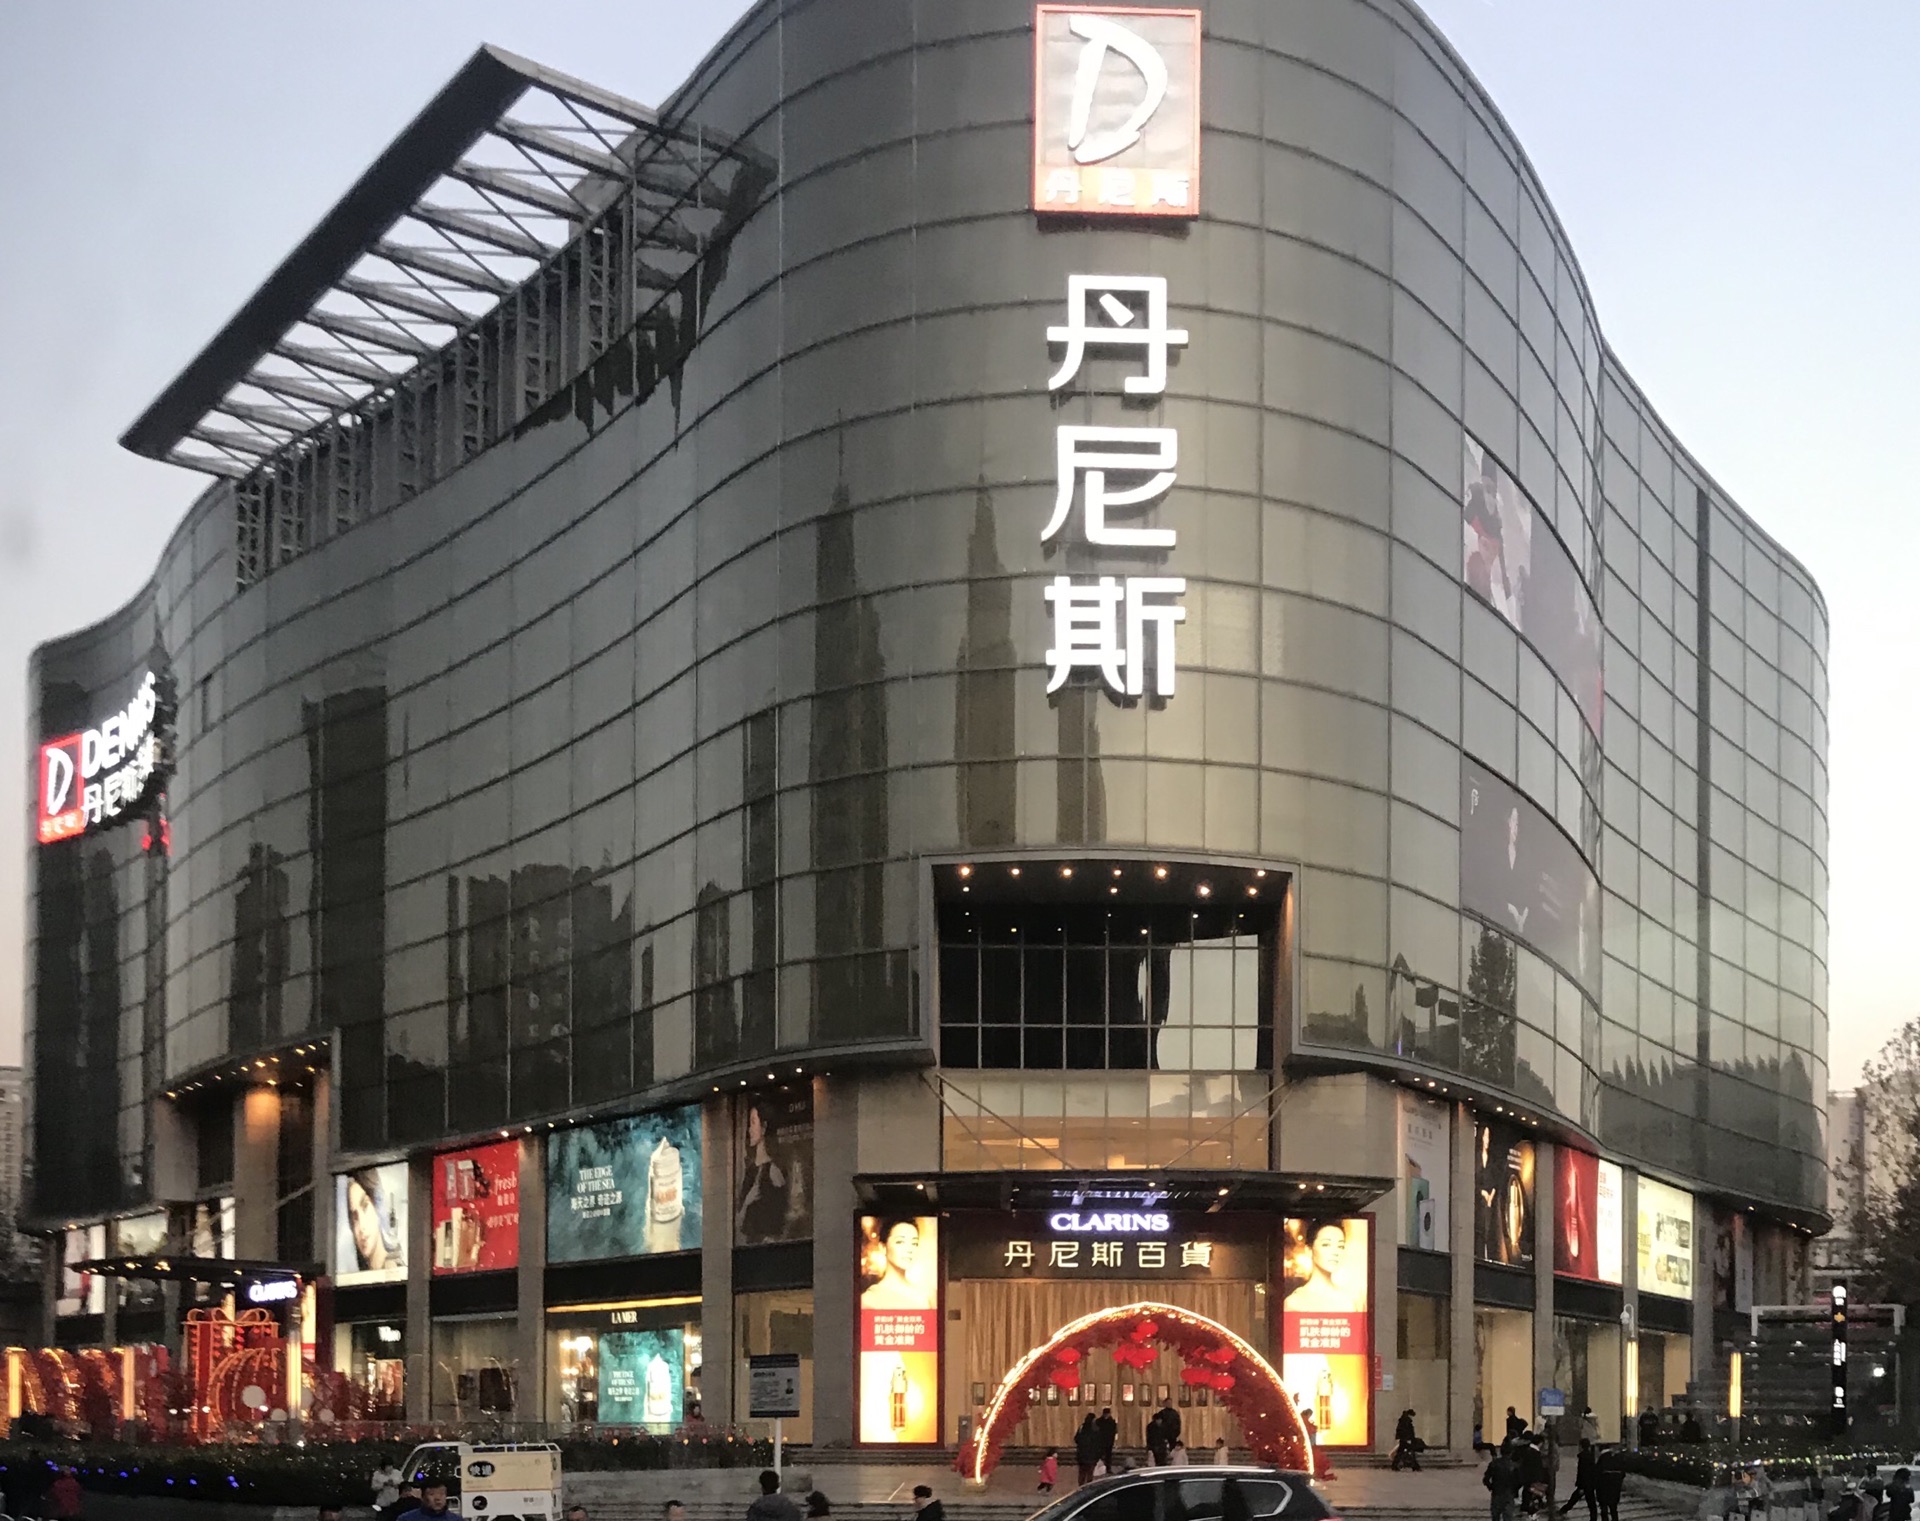 2022丹尼斯百货(人民路店)购物,商场很大,三栋楼相连,一号.